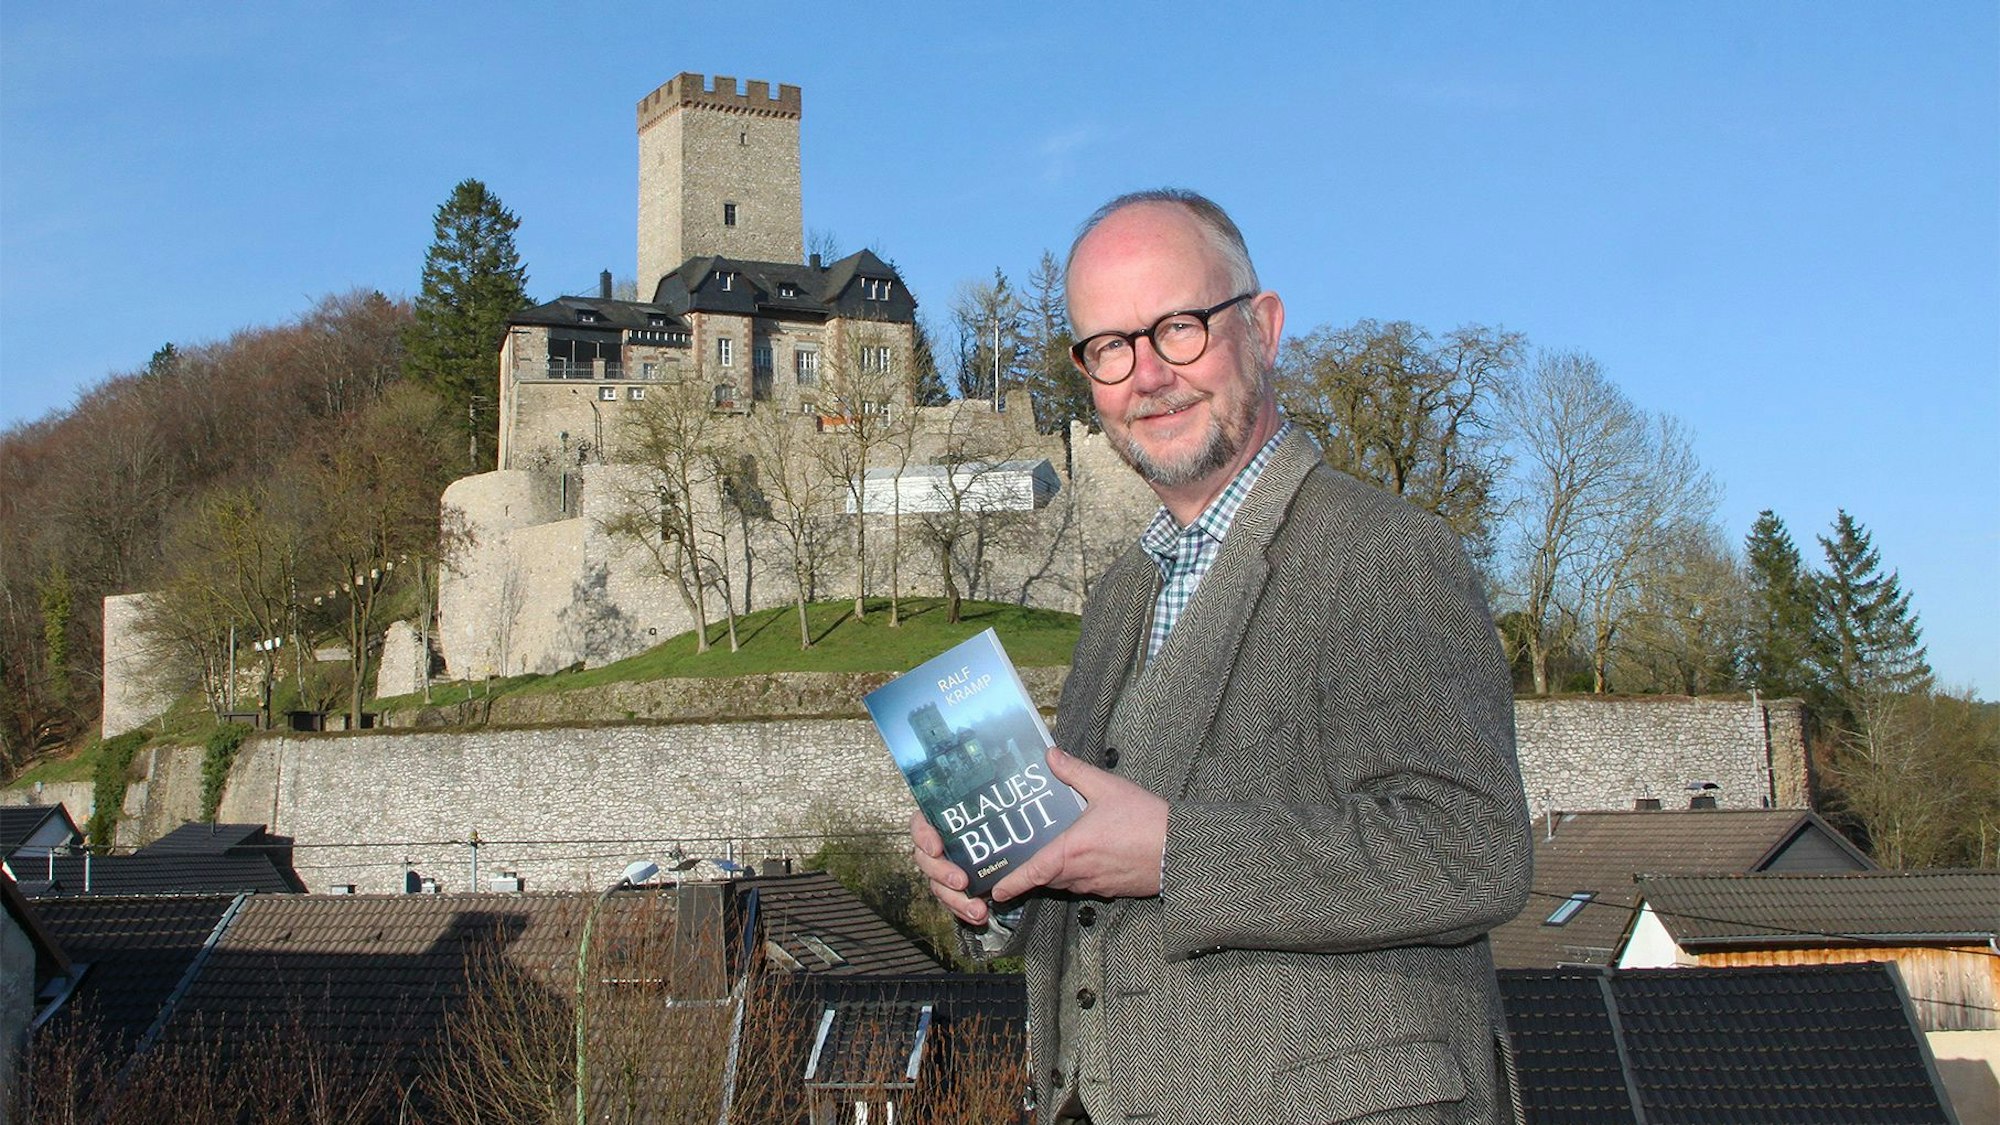 Krimiautor Ralf Kramp steht vor der Burg Kerpen, die auch auf dem Cover seines neuen Buches zu sehen ist, das er in der Hand hält.